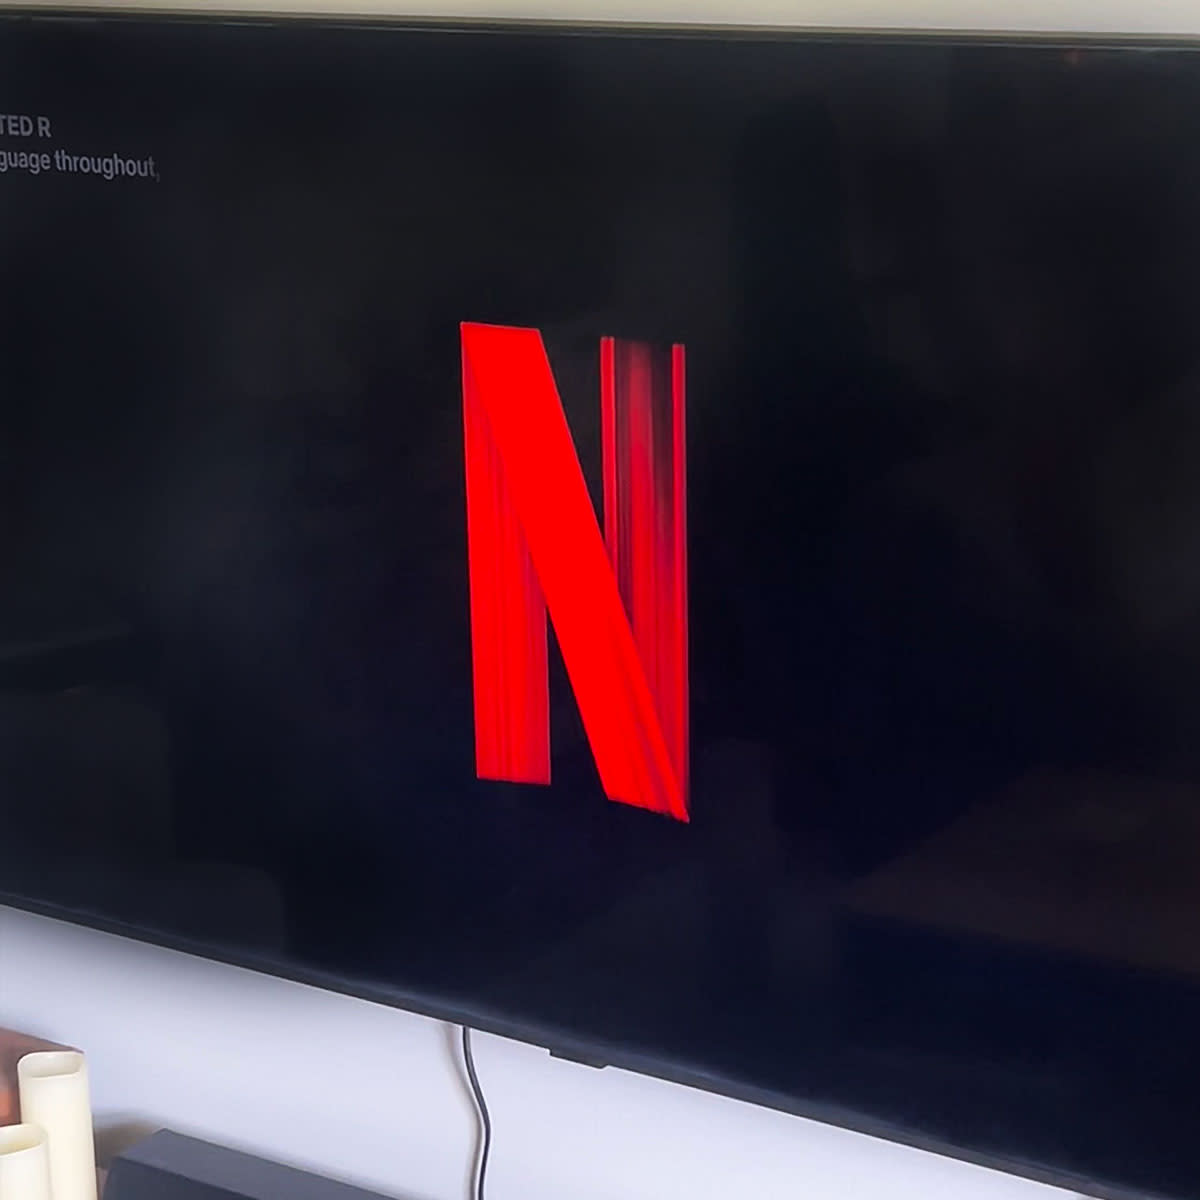 Netflix screen on TV